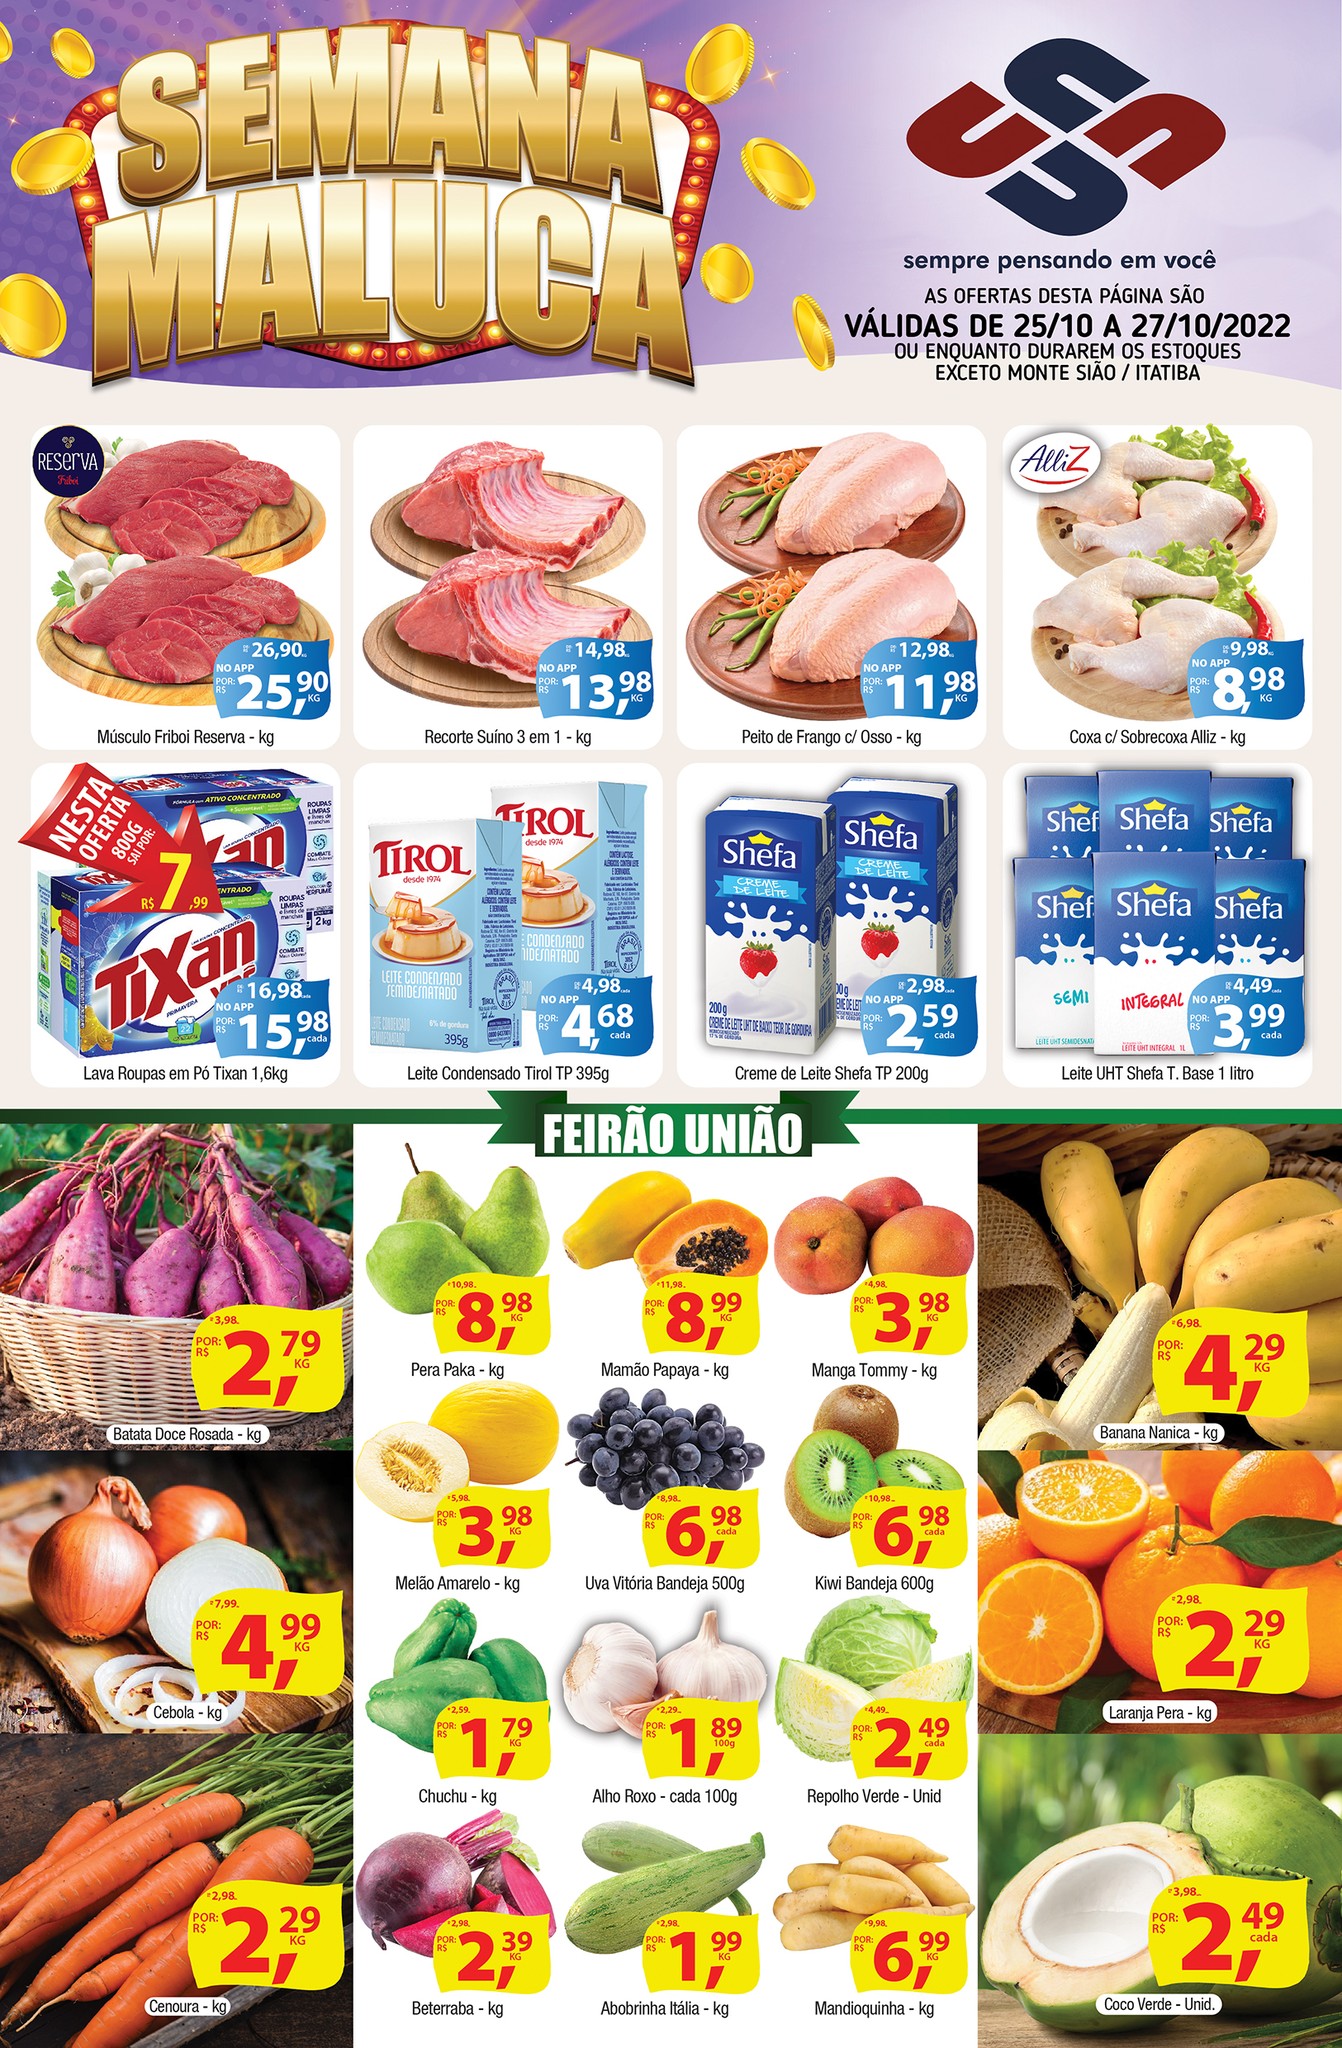 Semana Maluca do União Supermercados tem mais de 50 ofertas